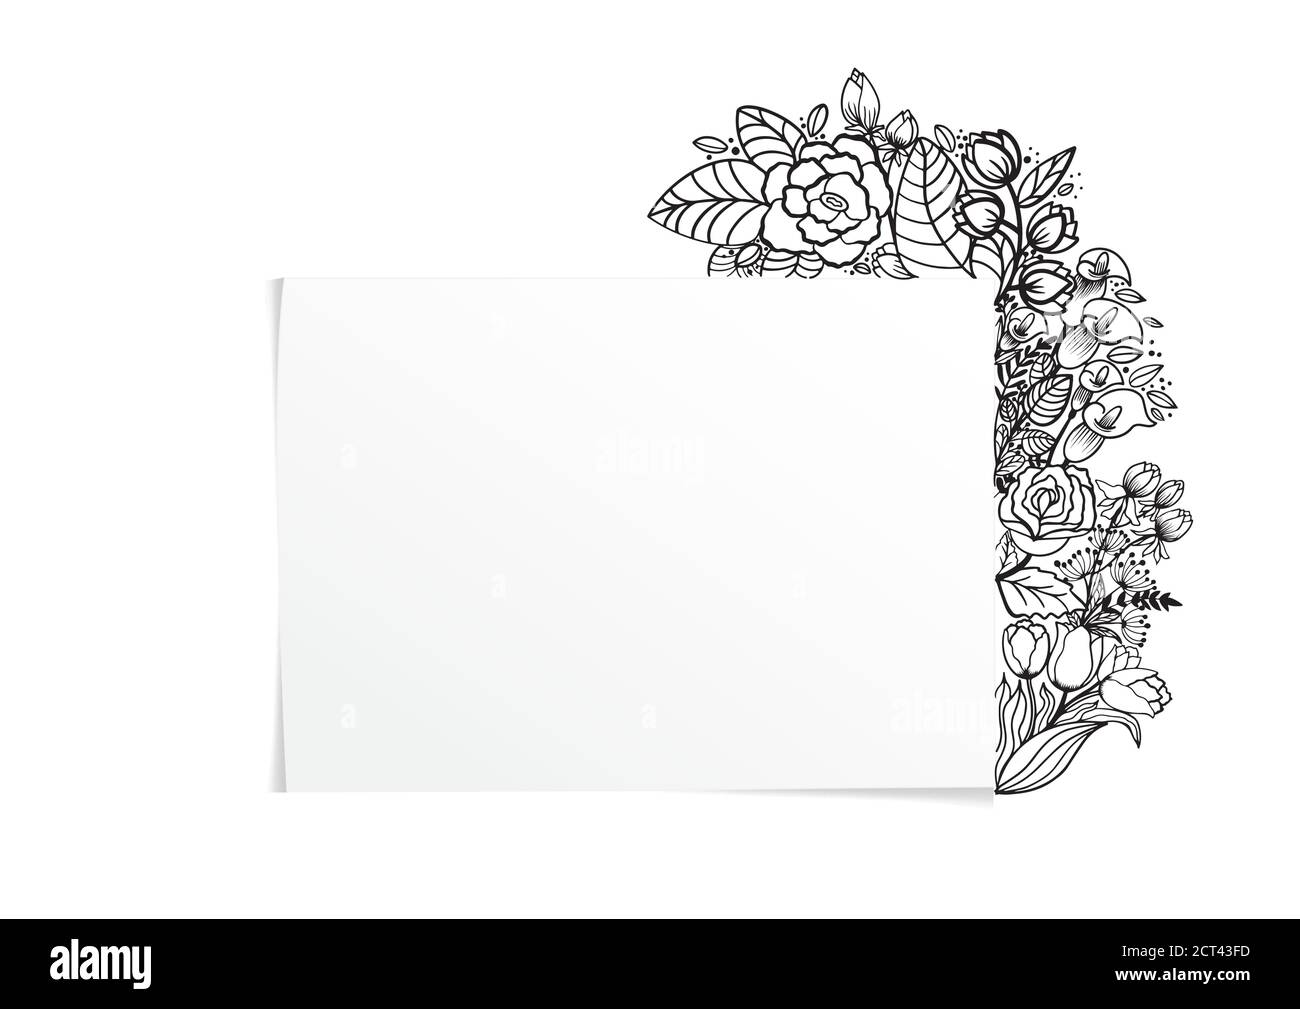 Magnifique cadre floral gris. Pour la conception de vos produits. Cartes postales, cartes de vœux et invitations pour l'anniversaire, le mariage, la Saint-Valentin, la fête. Vecteur Illustration de Vecteur